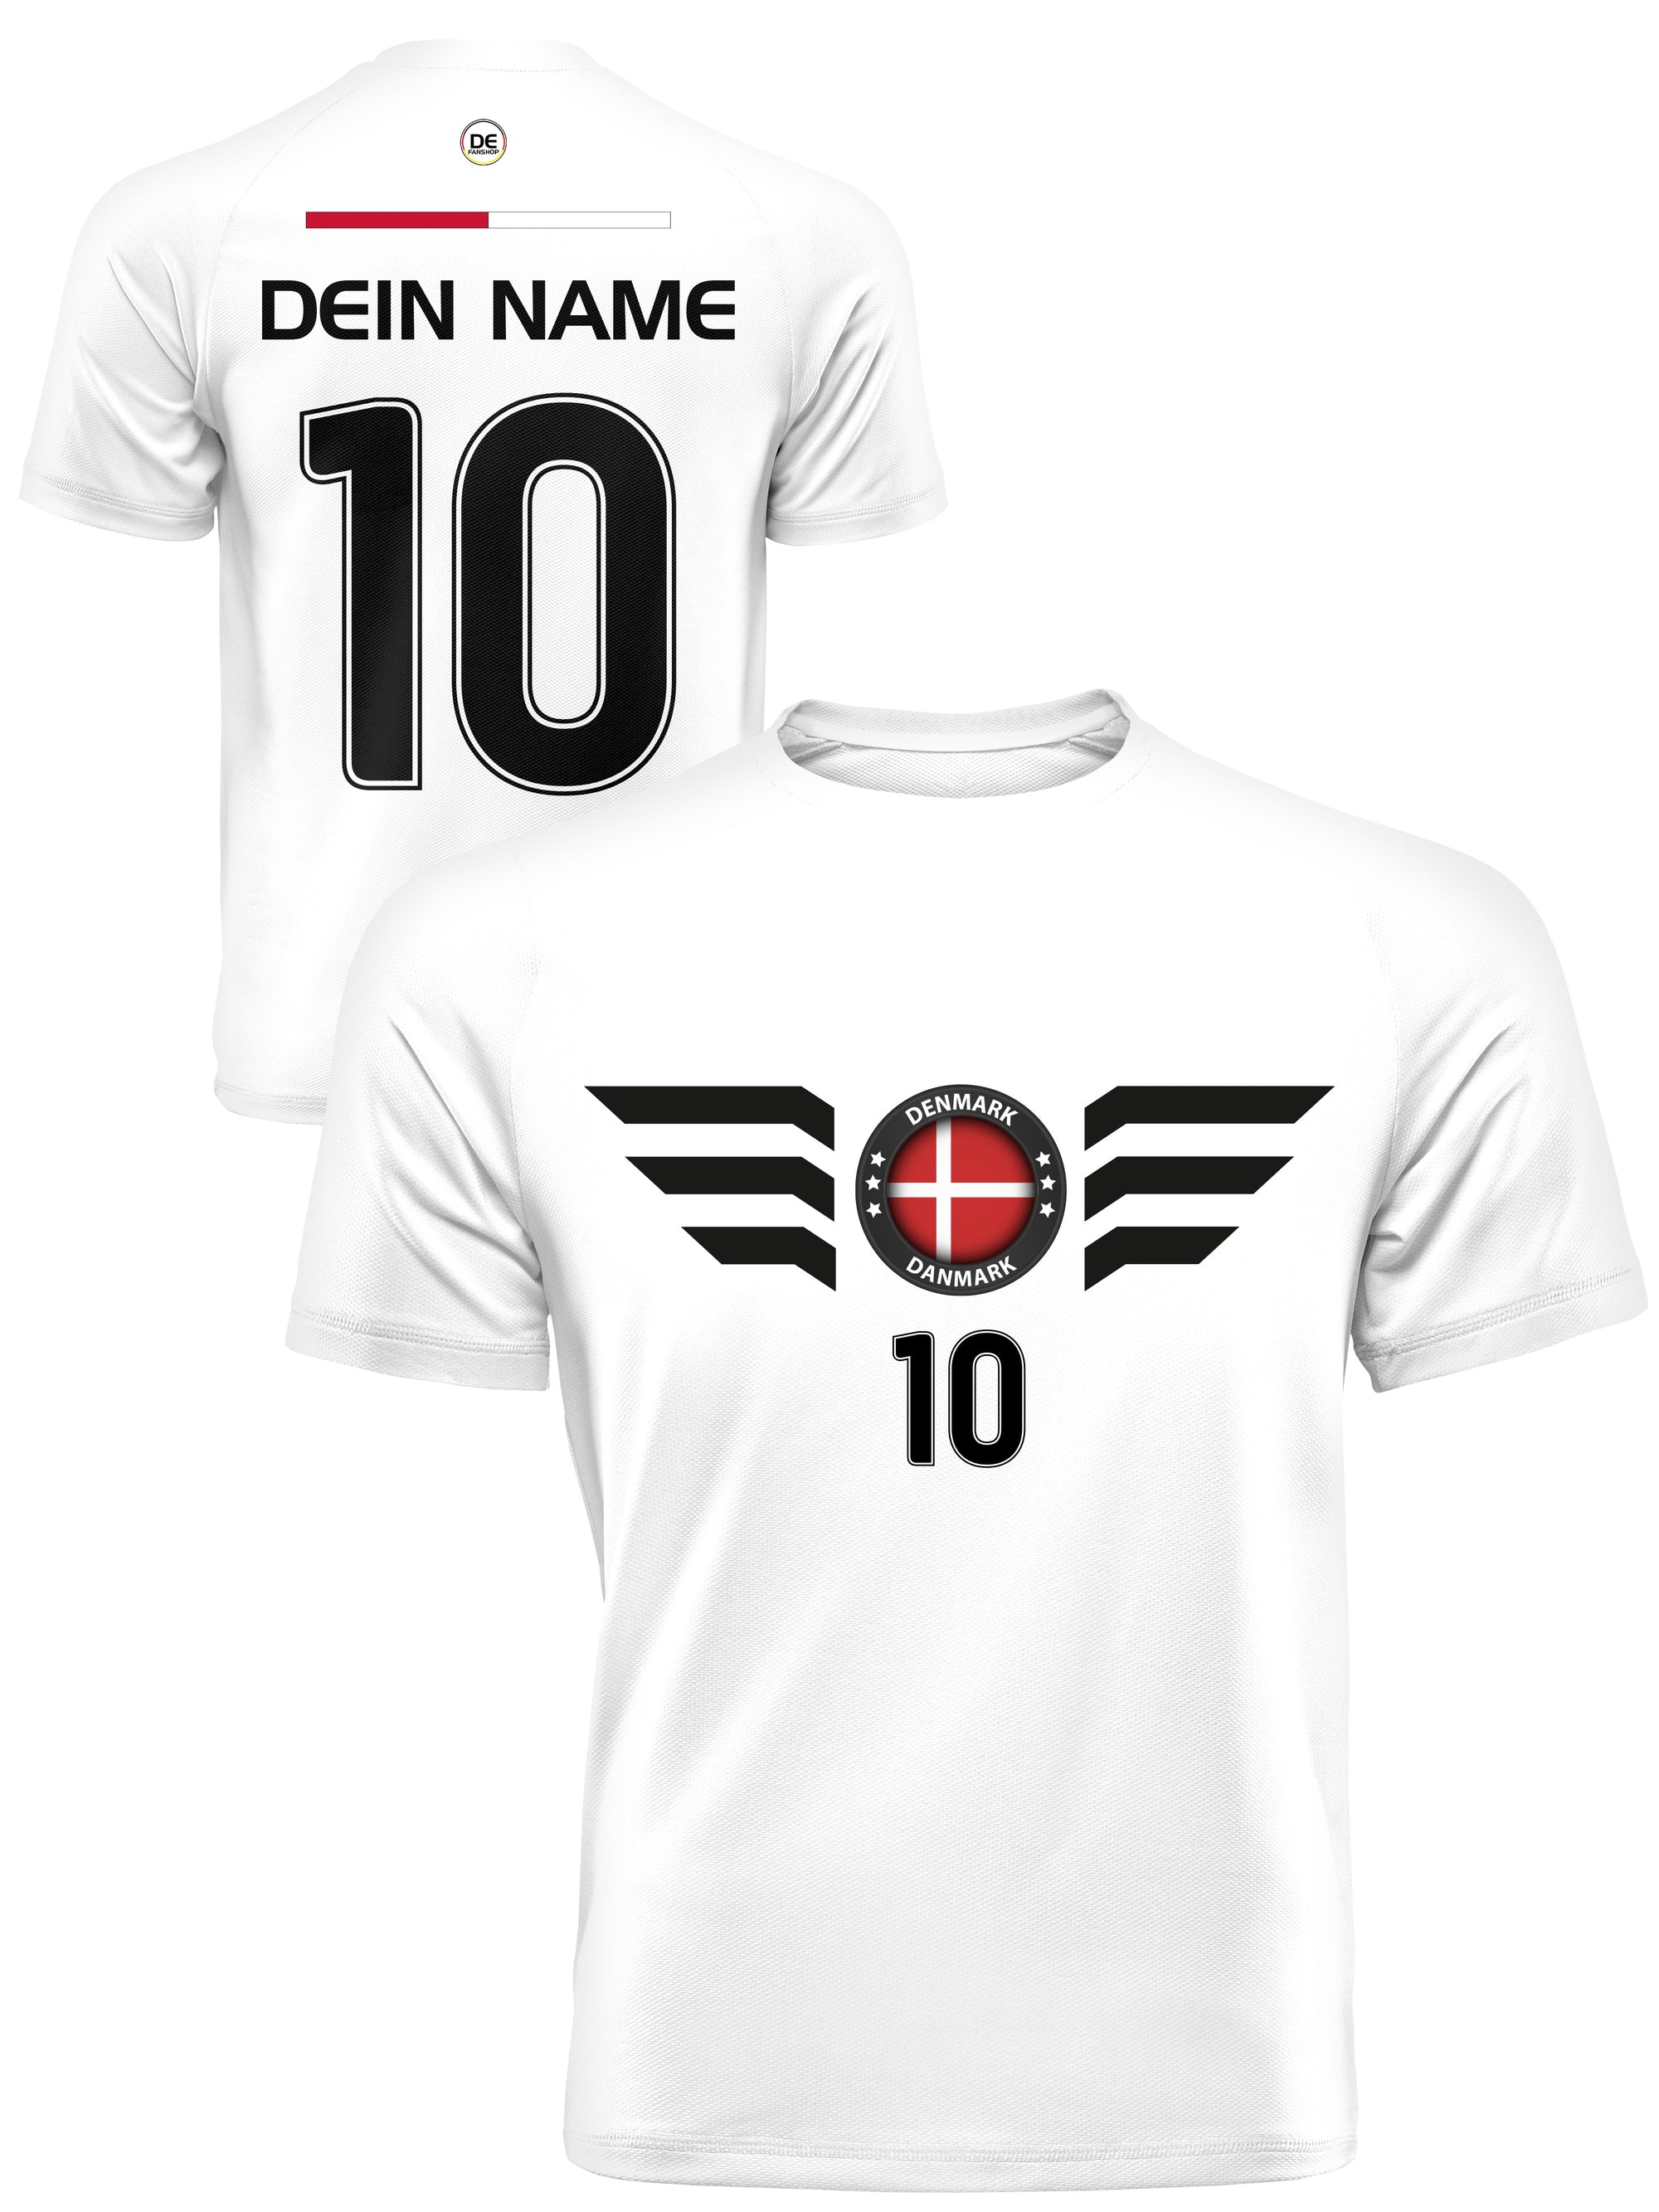 Dänemark Fußball Trikot mit Dein Name